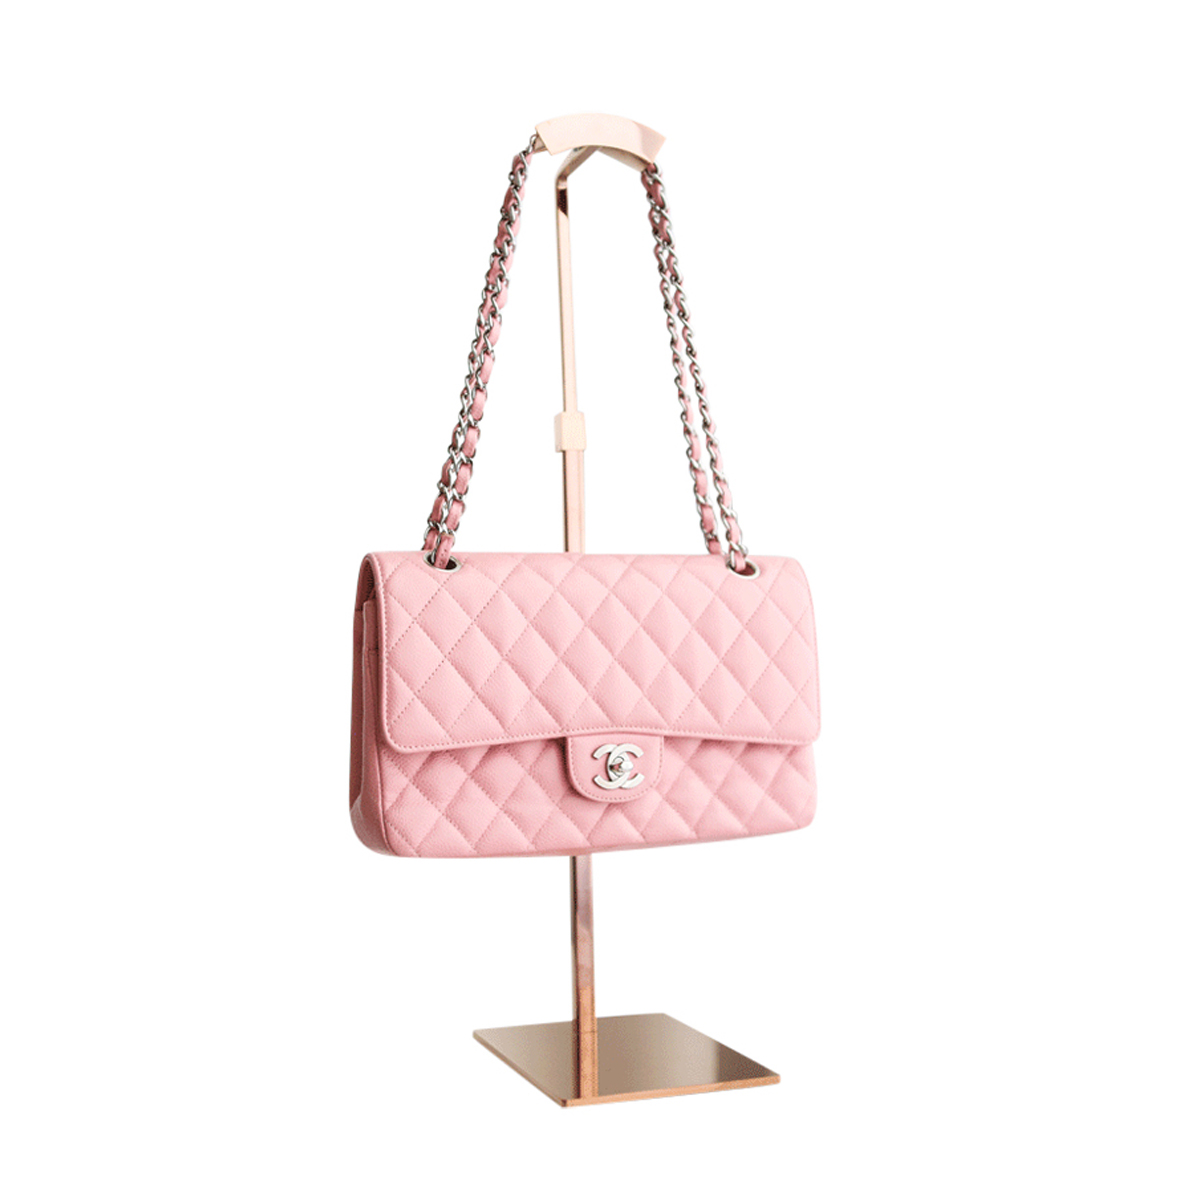 Chanel Bag 2.55 Medium - Janet Mandell